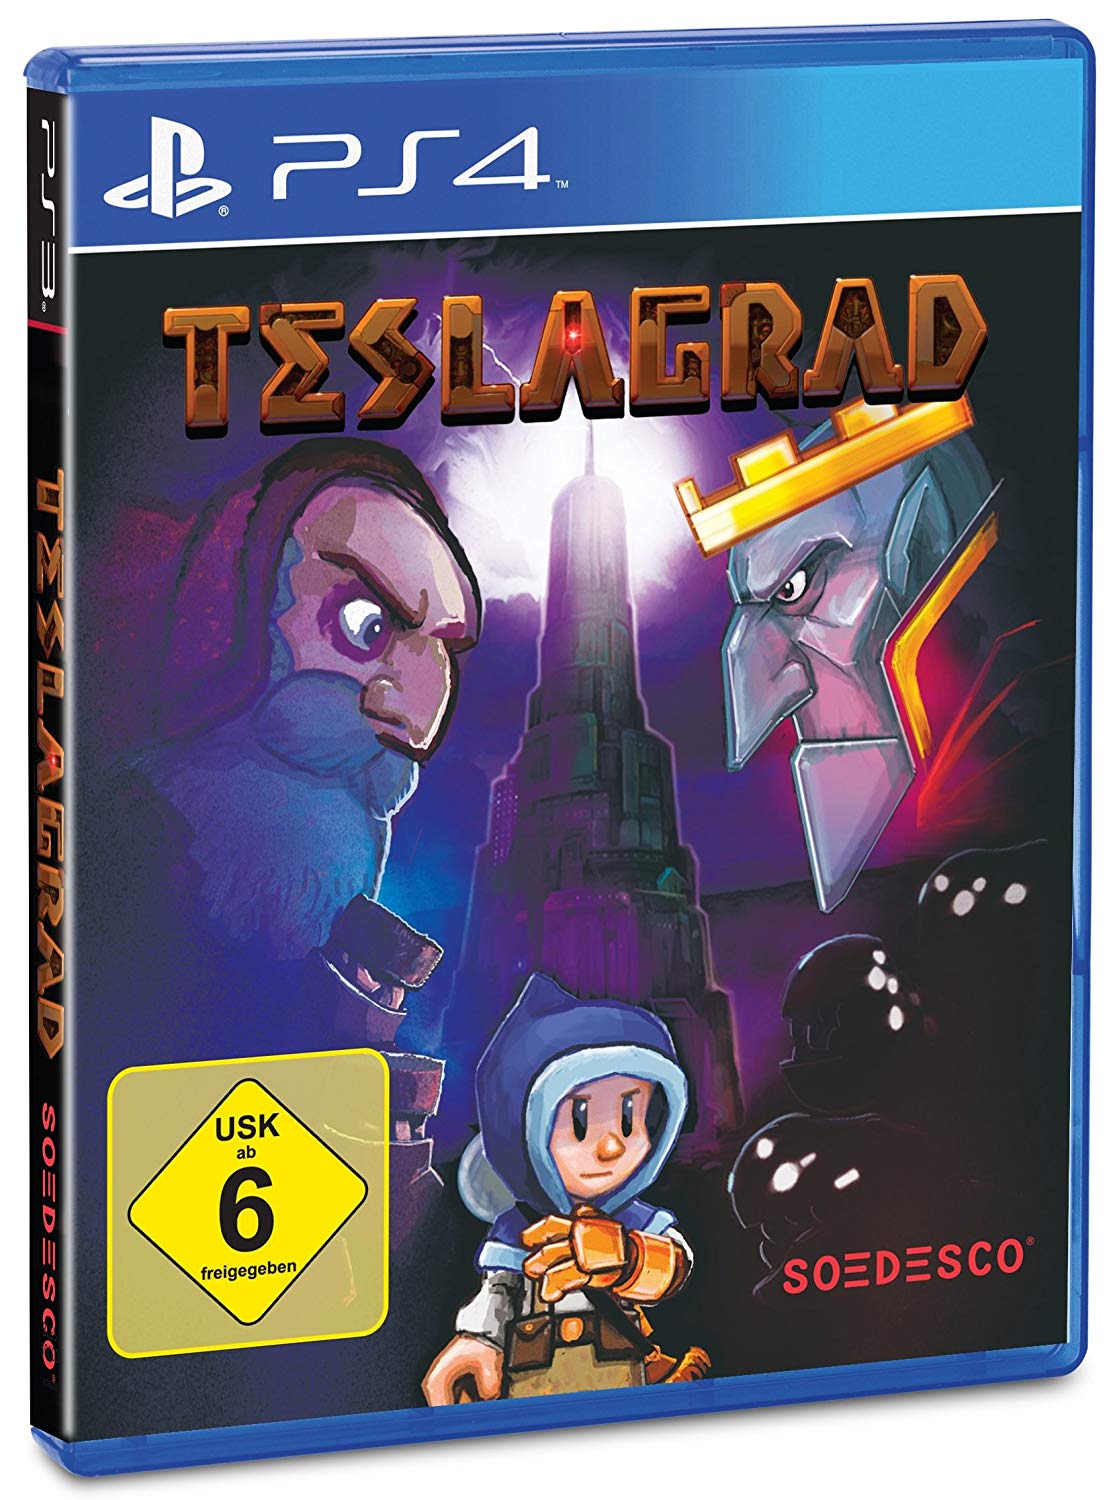 Teslagrad - PlayStation 4 Játékok